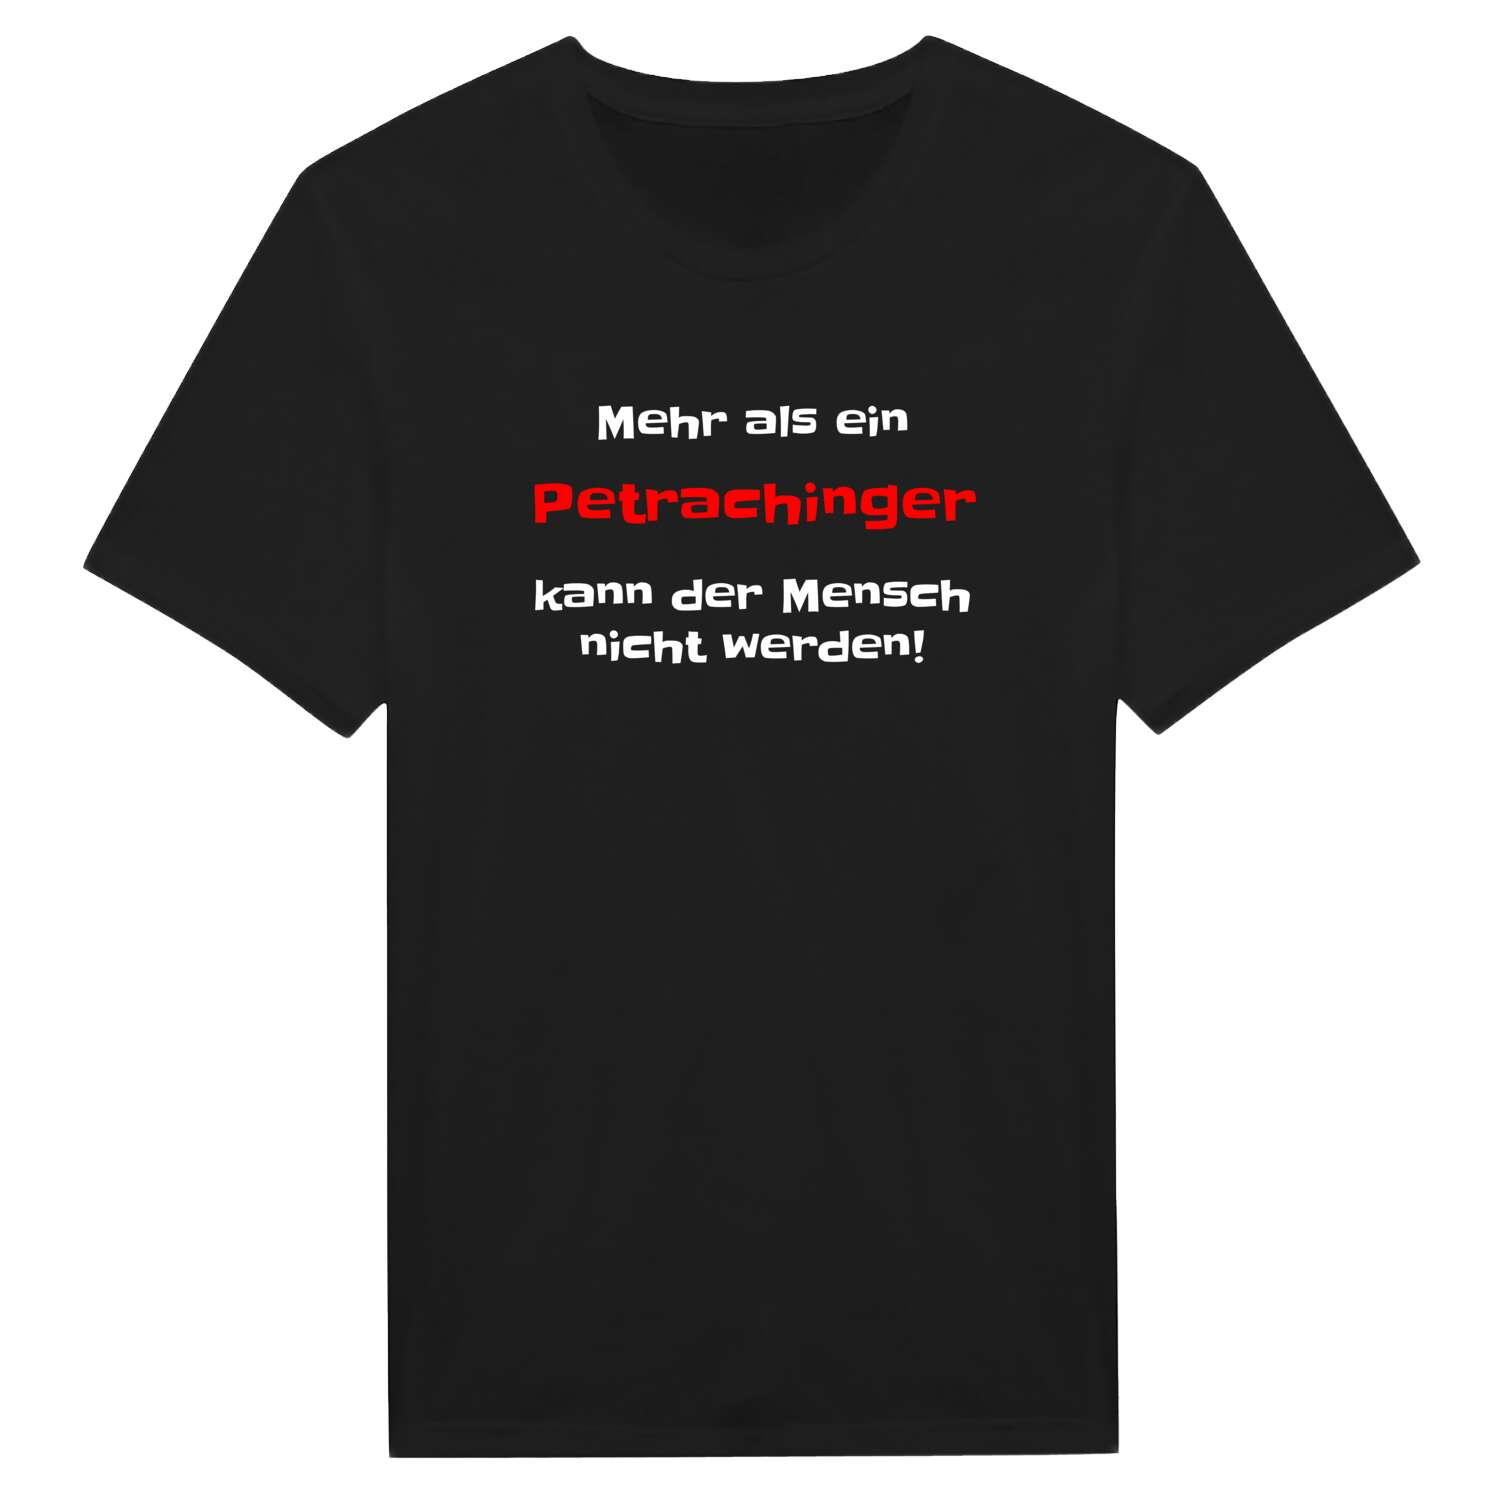 Petraching T-Shirt »Mehr als ein«